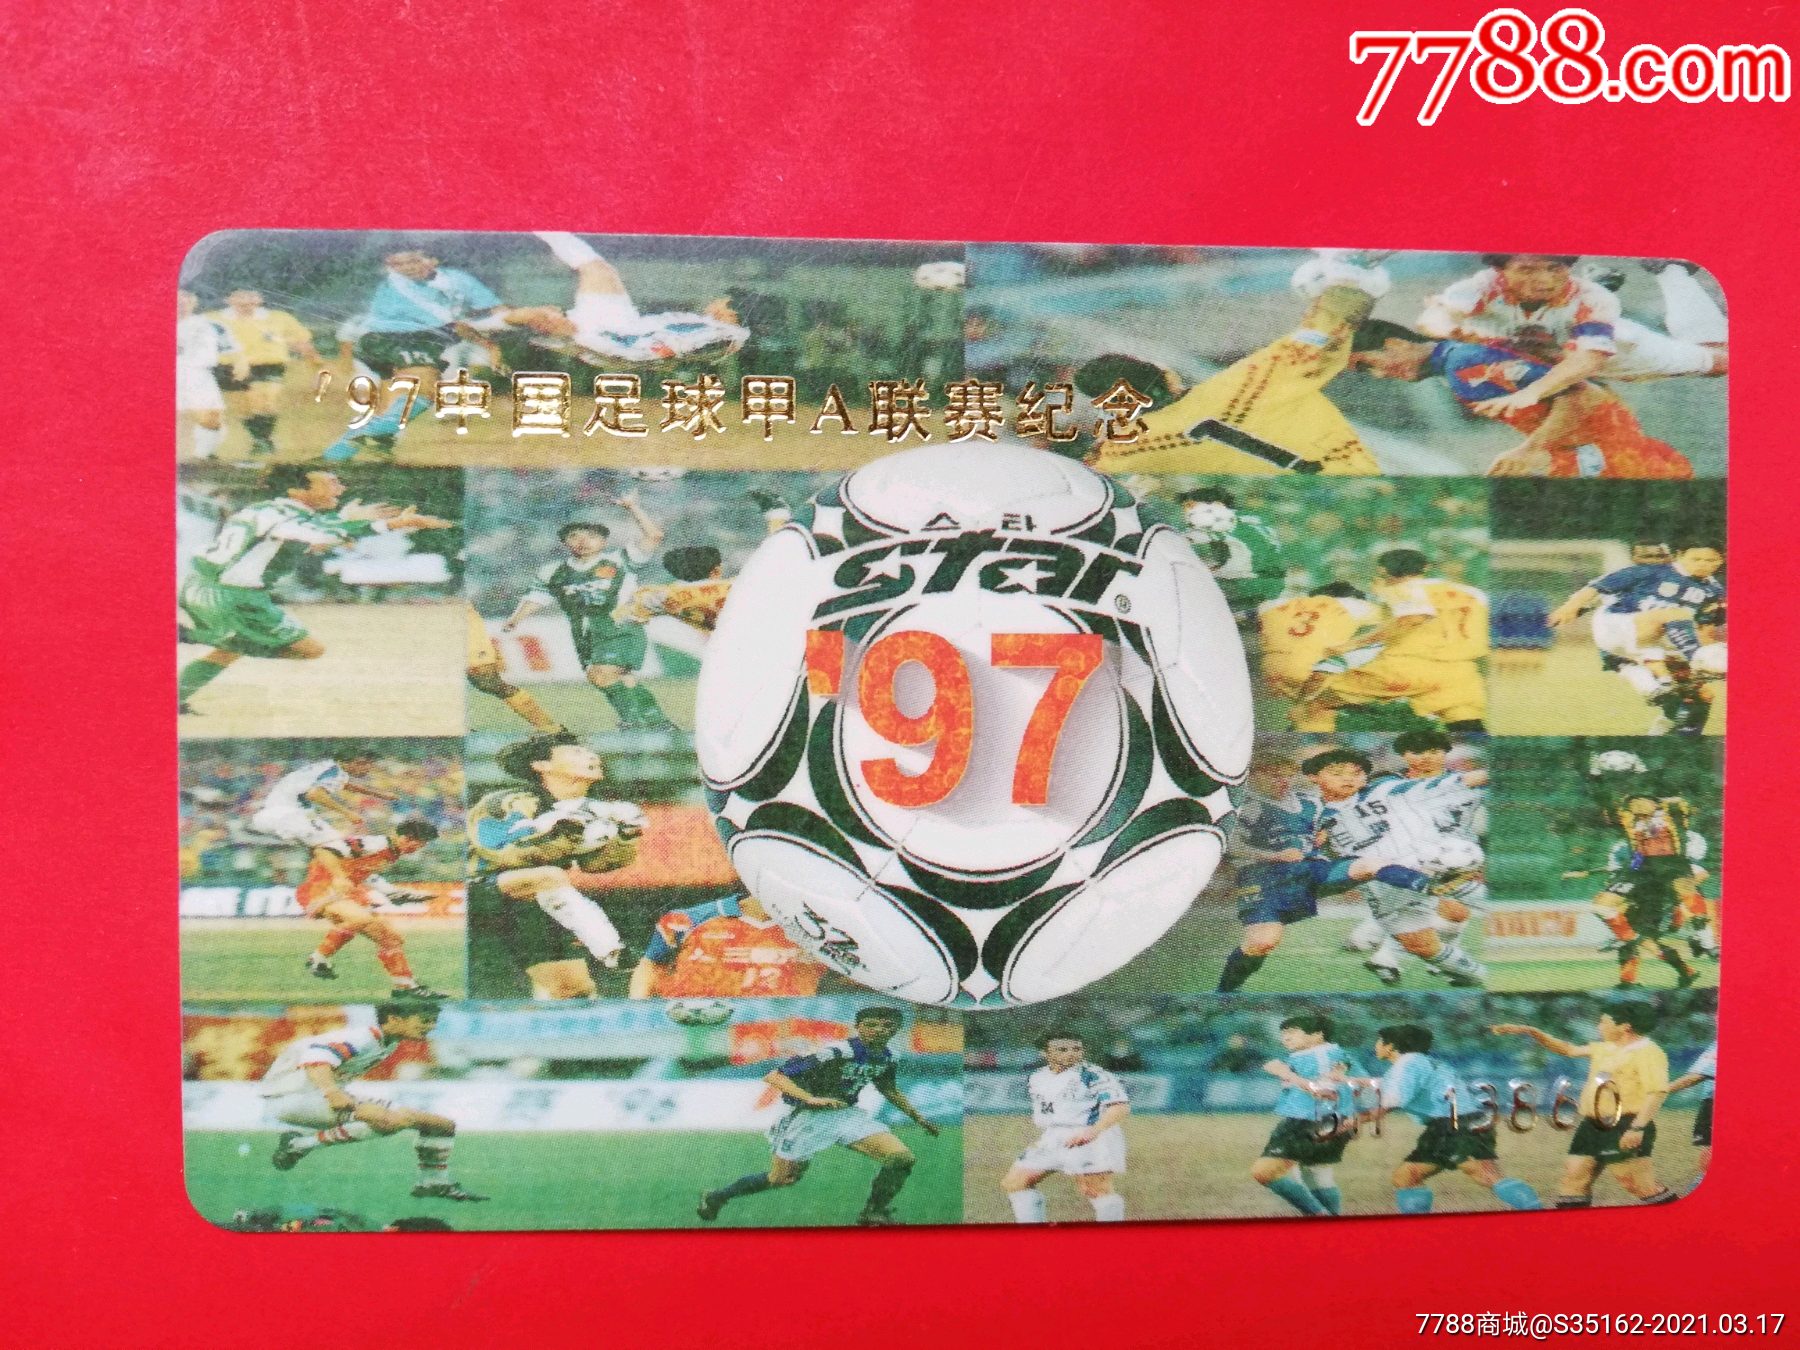 97中国足球甲a联赛